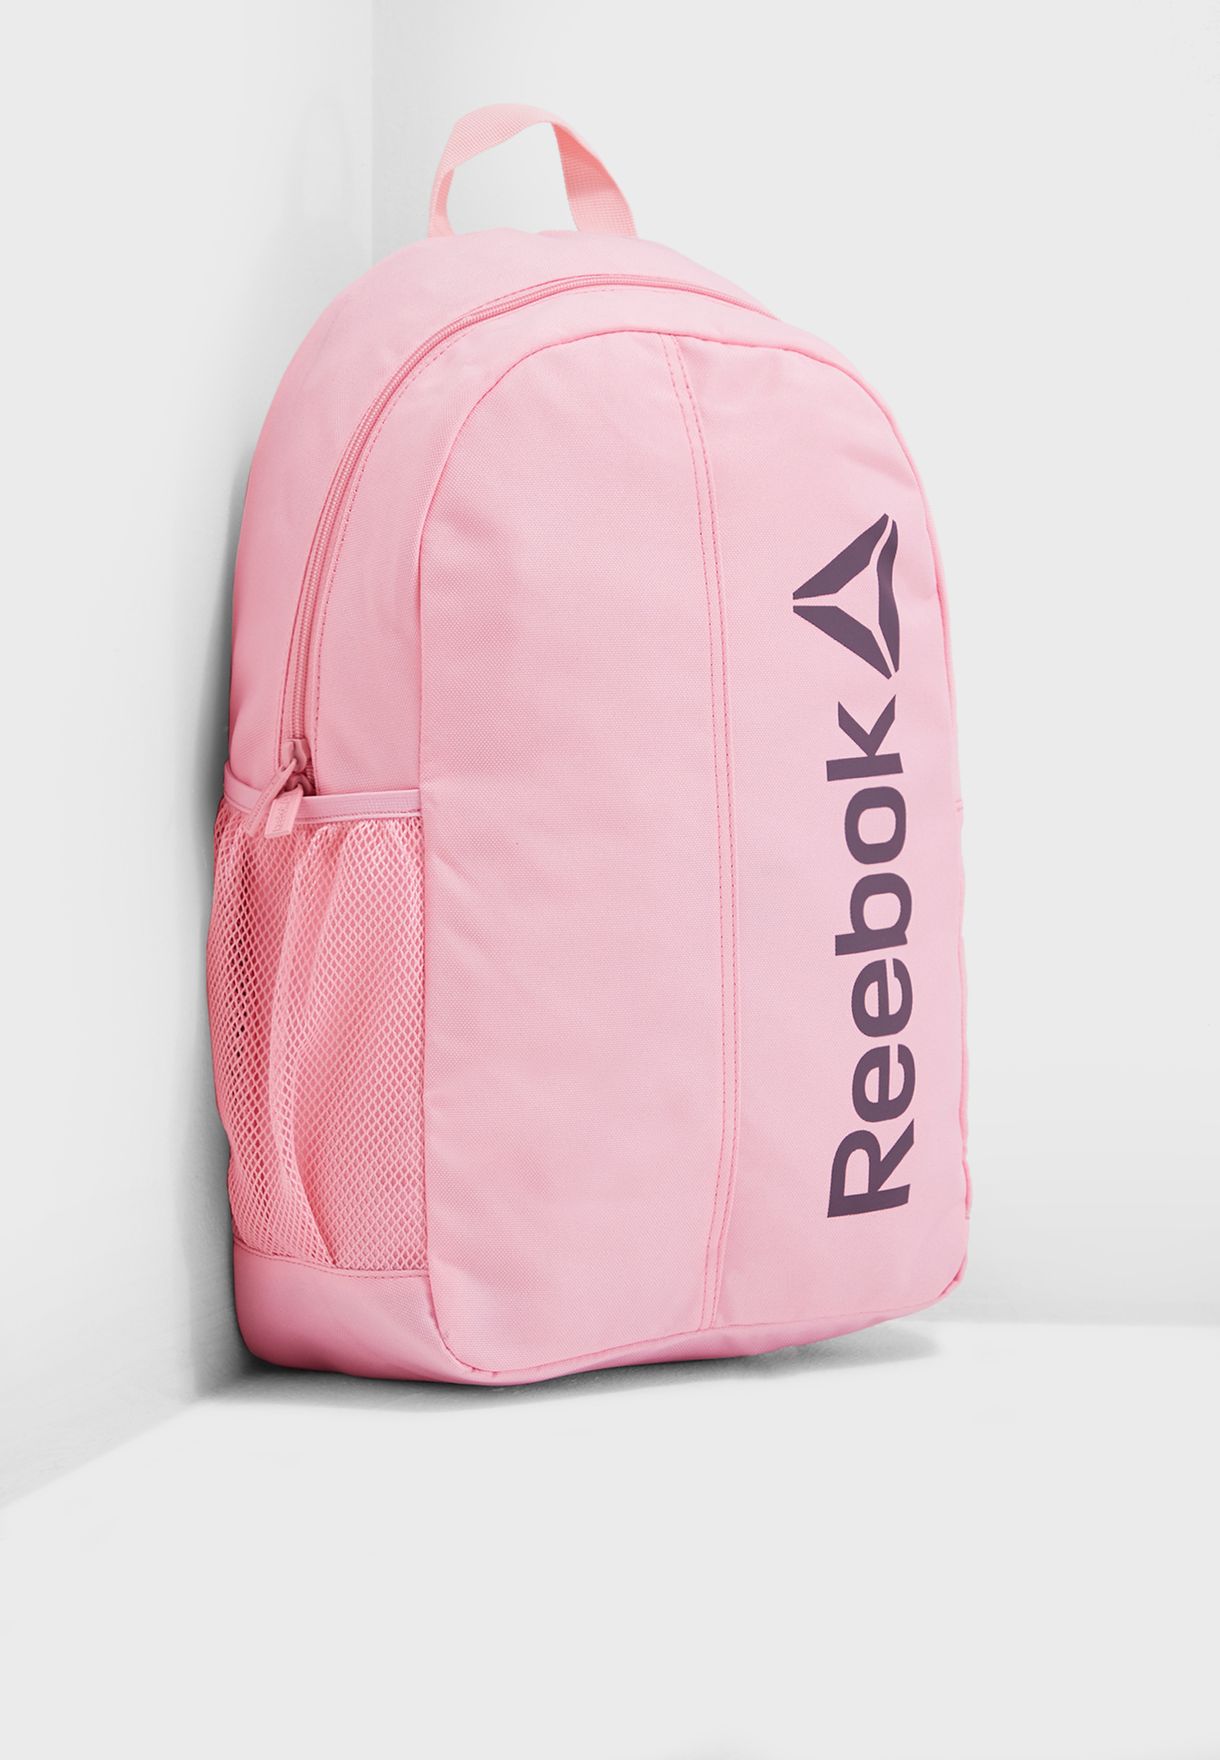 reebok bags pink